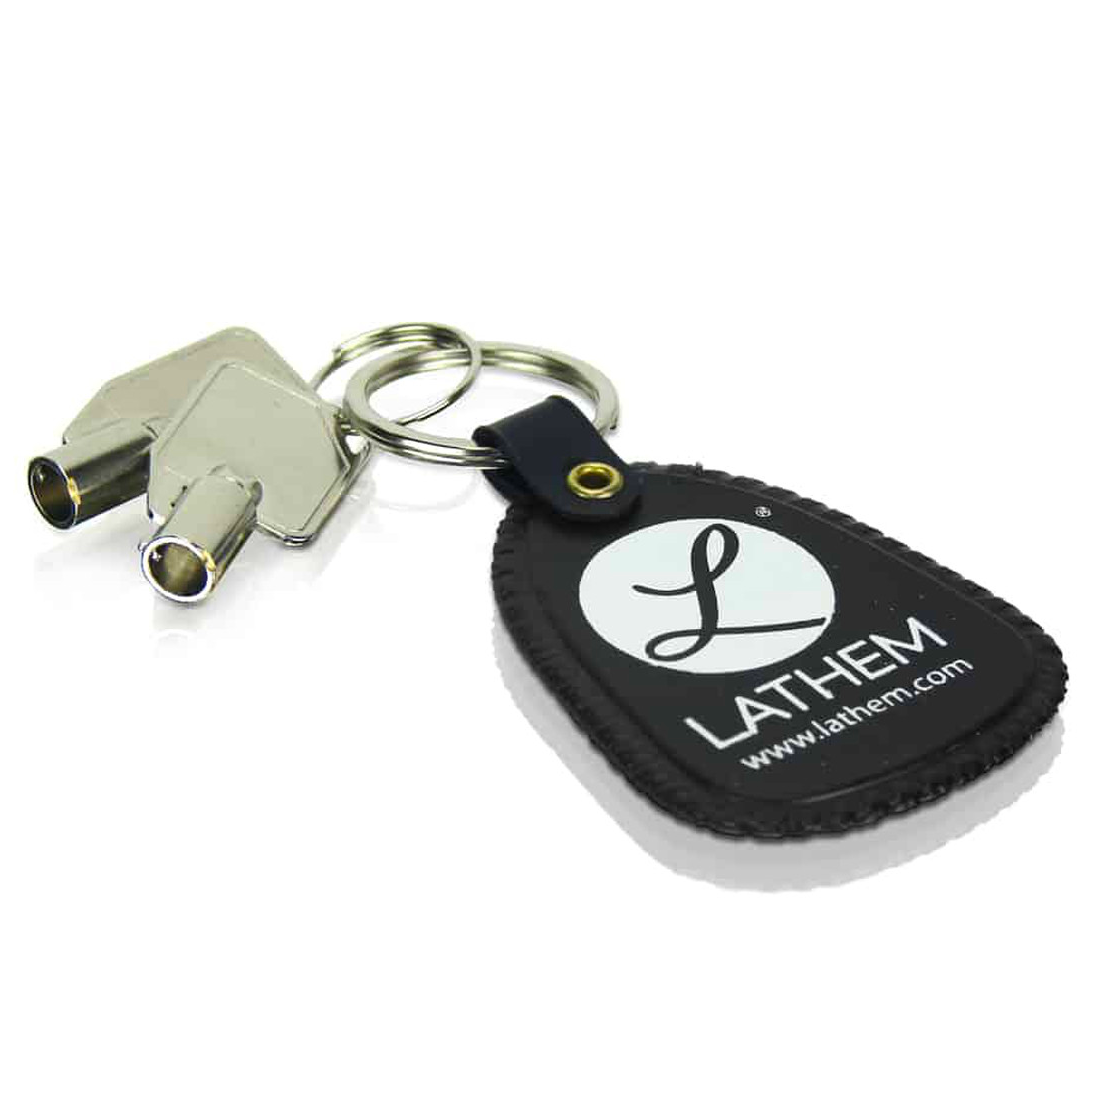 Lathem VSM0081 Keys for 7500E & LT5000 Time Clocks